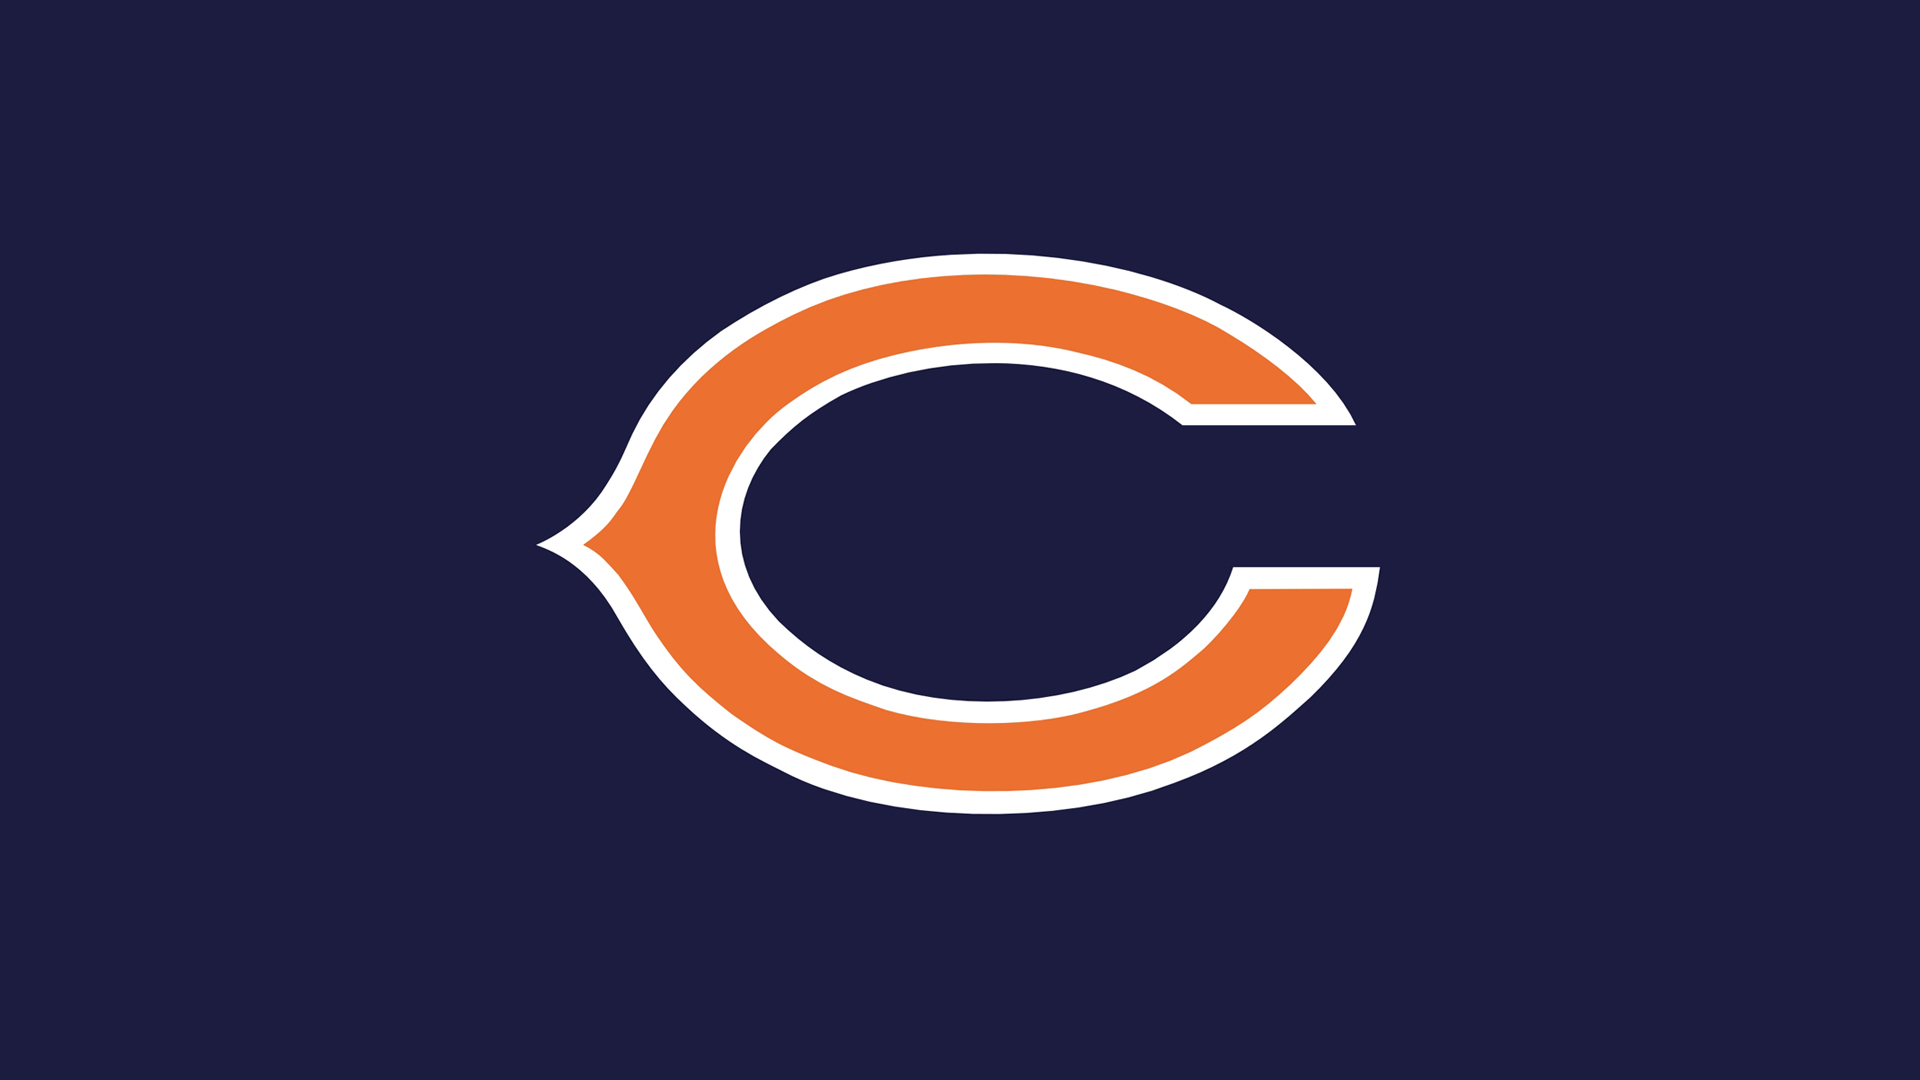 Navy Football Logo Wallpaper Nfl Chicago Bears C Dark